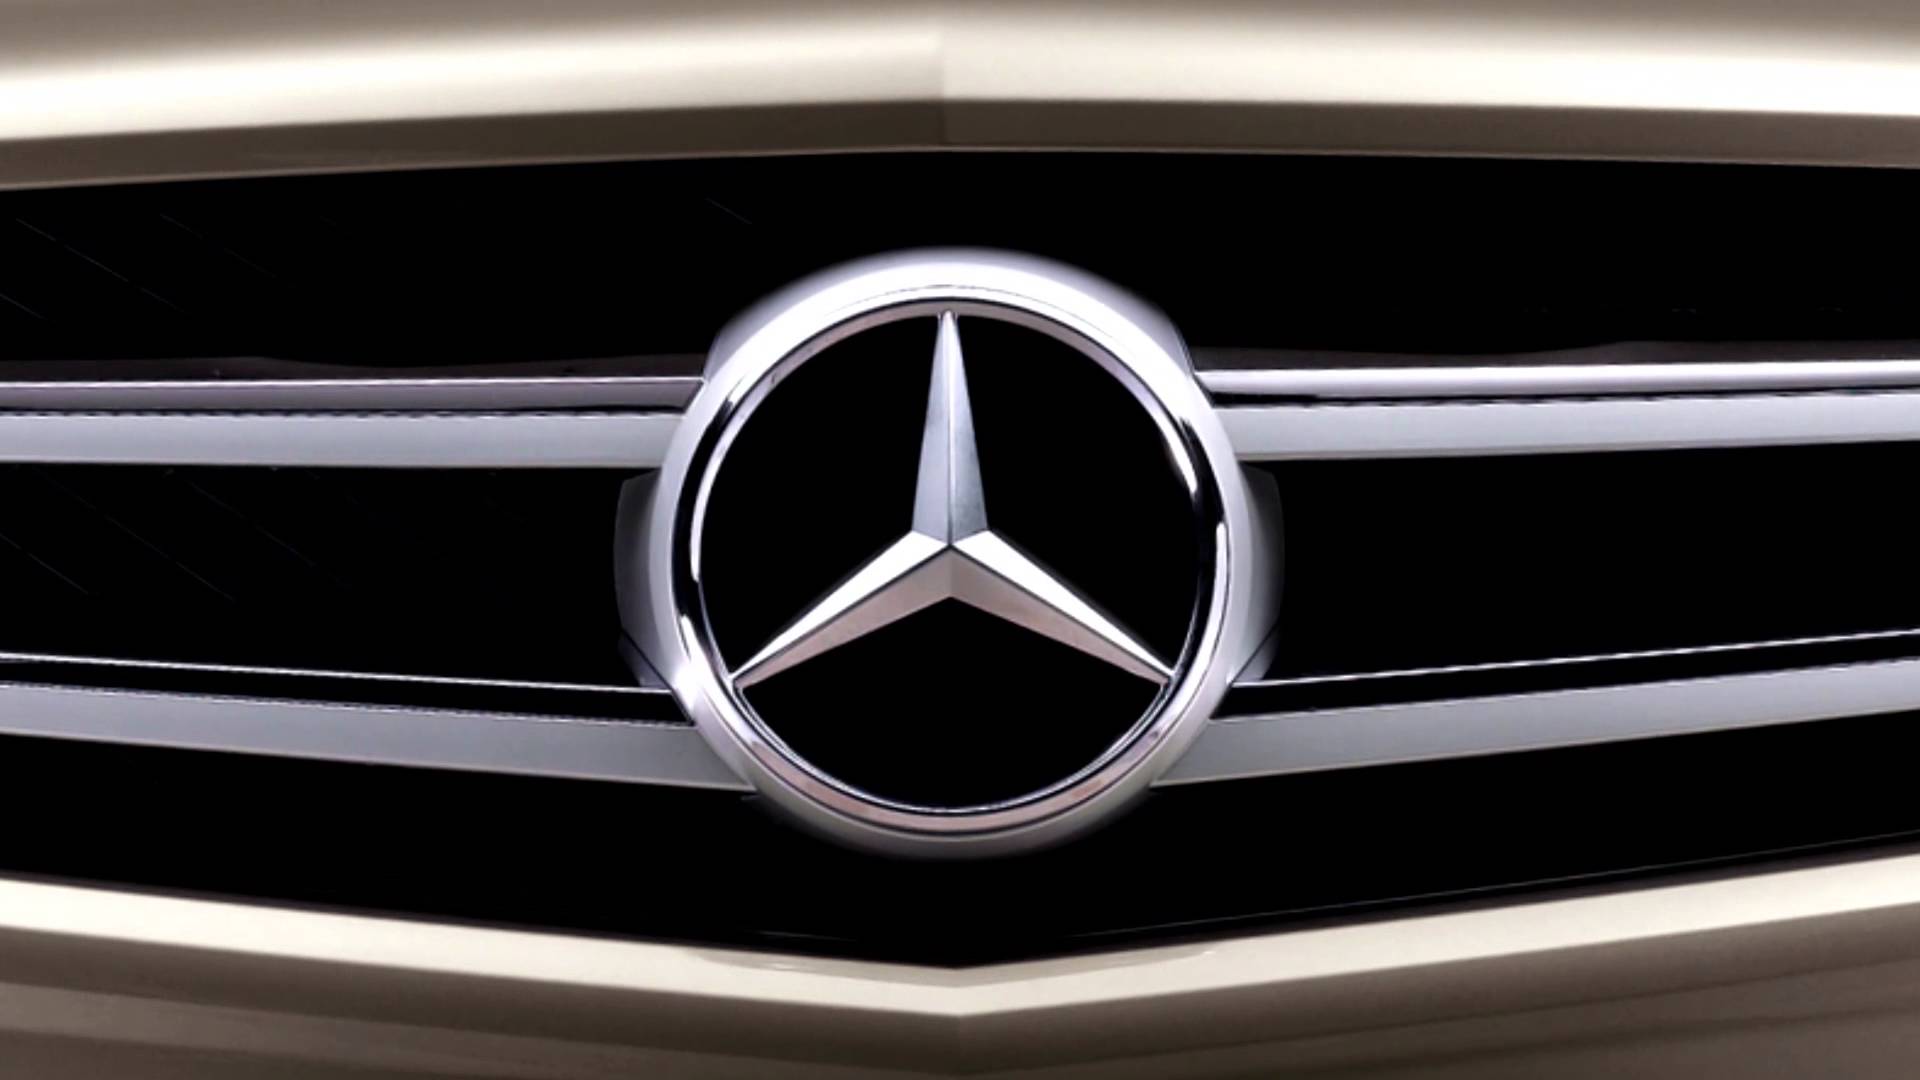 HD Logo of Mercedes Benz Wallpaper 1080p - HiReWallpapers 6171